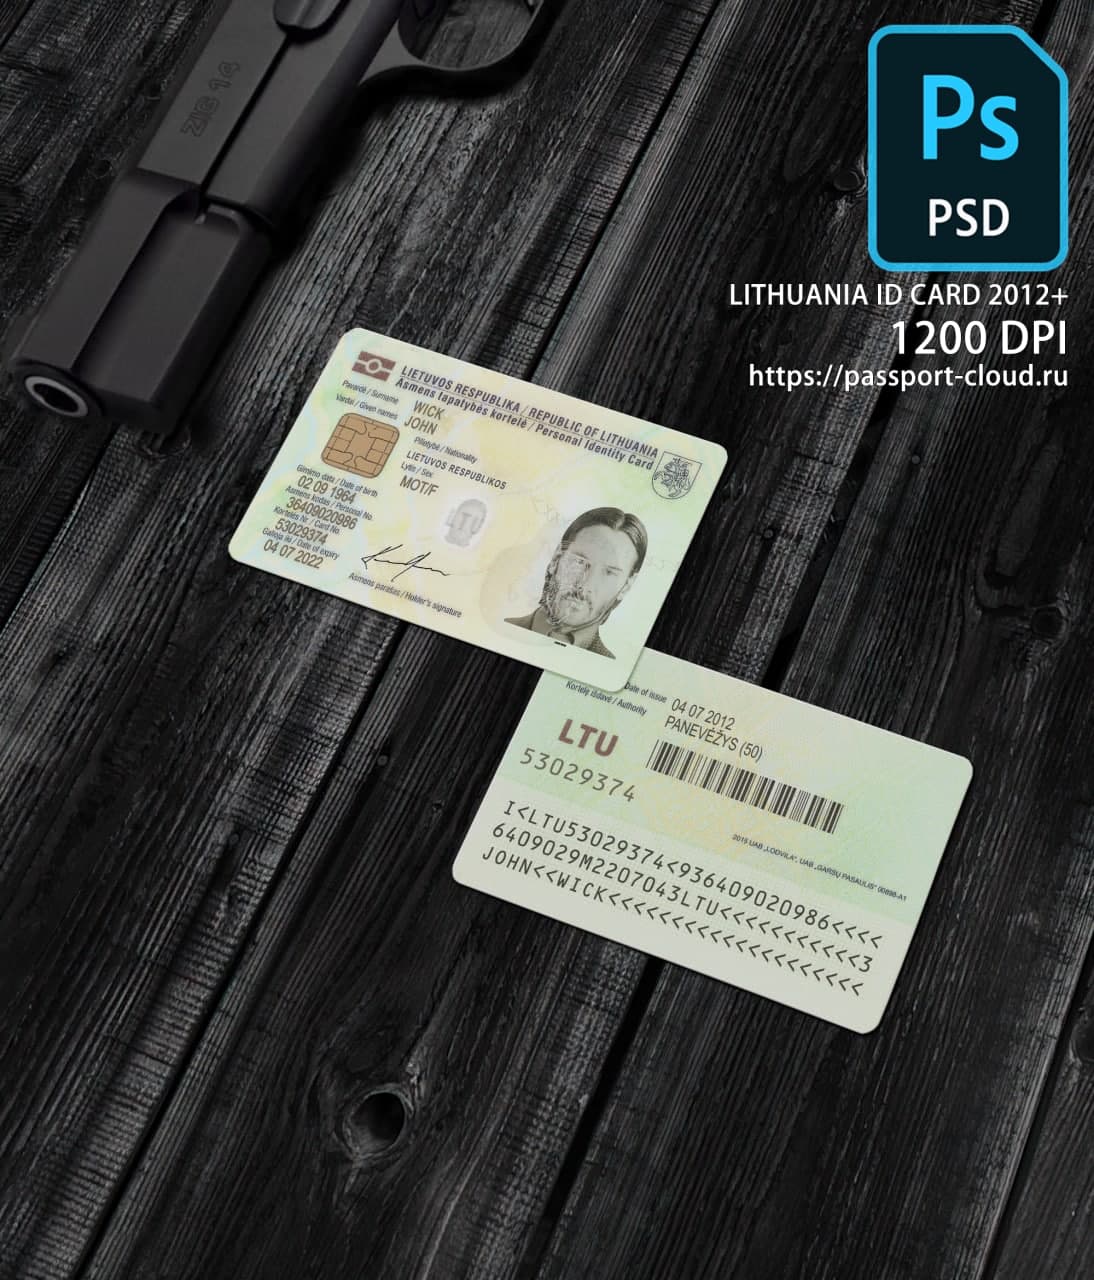 Lithuania ID Card 2012+ PSD1